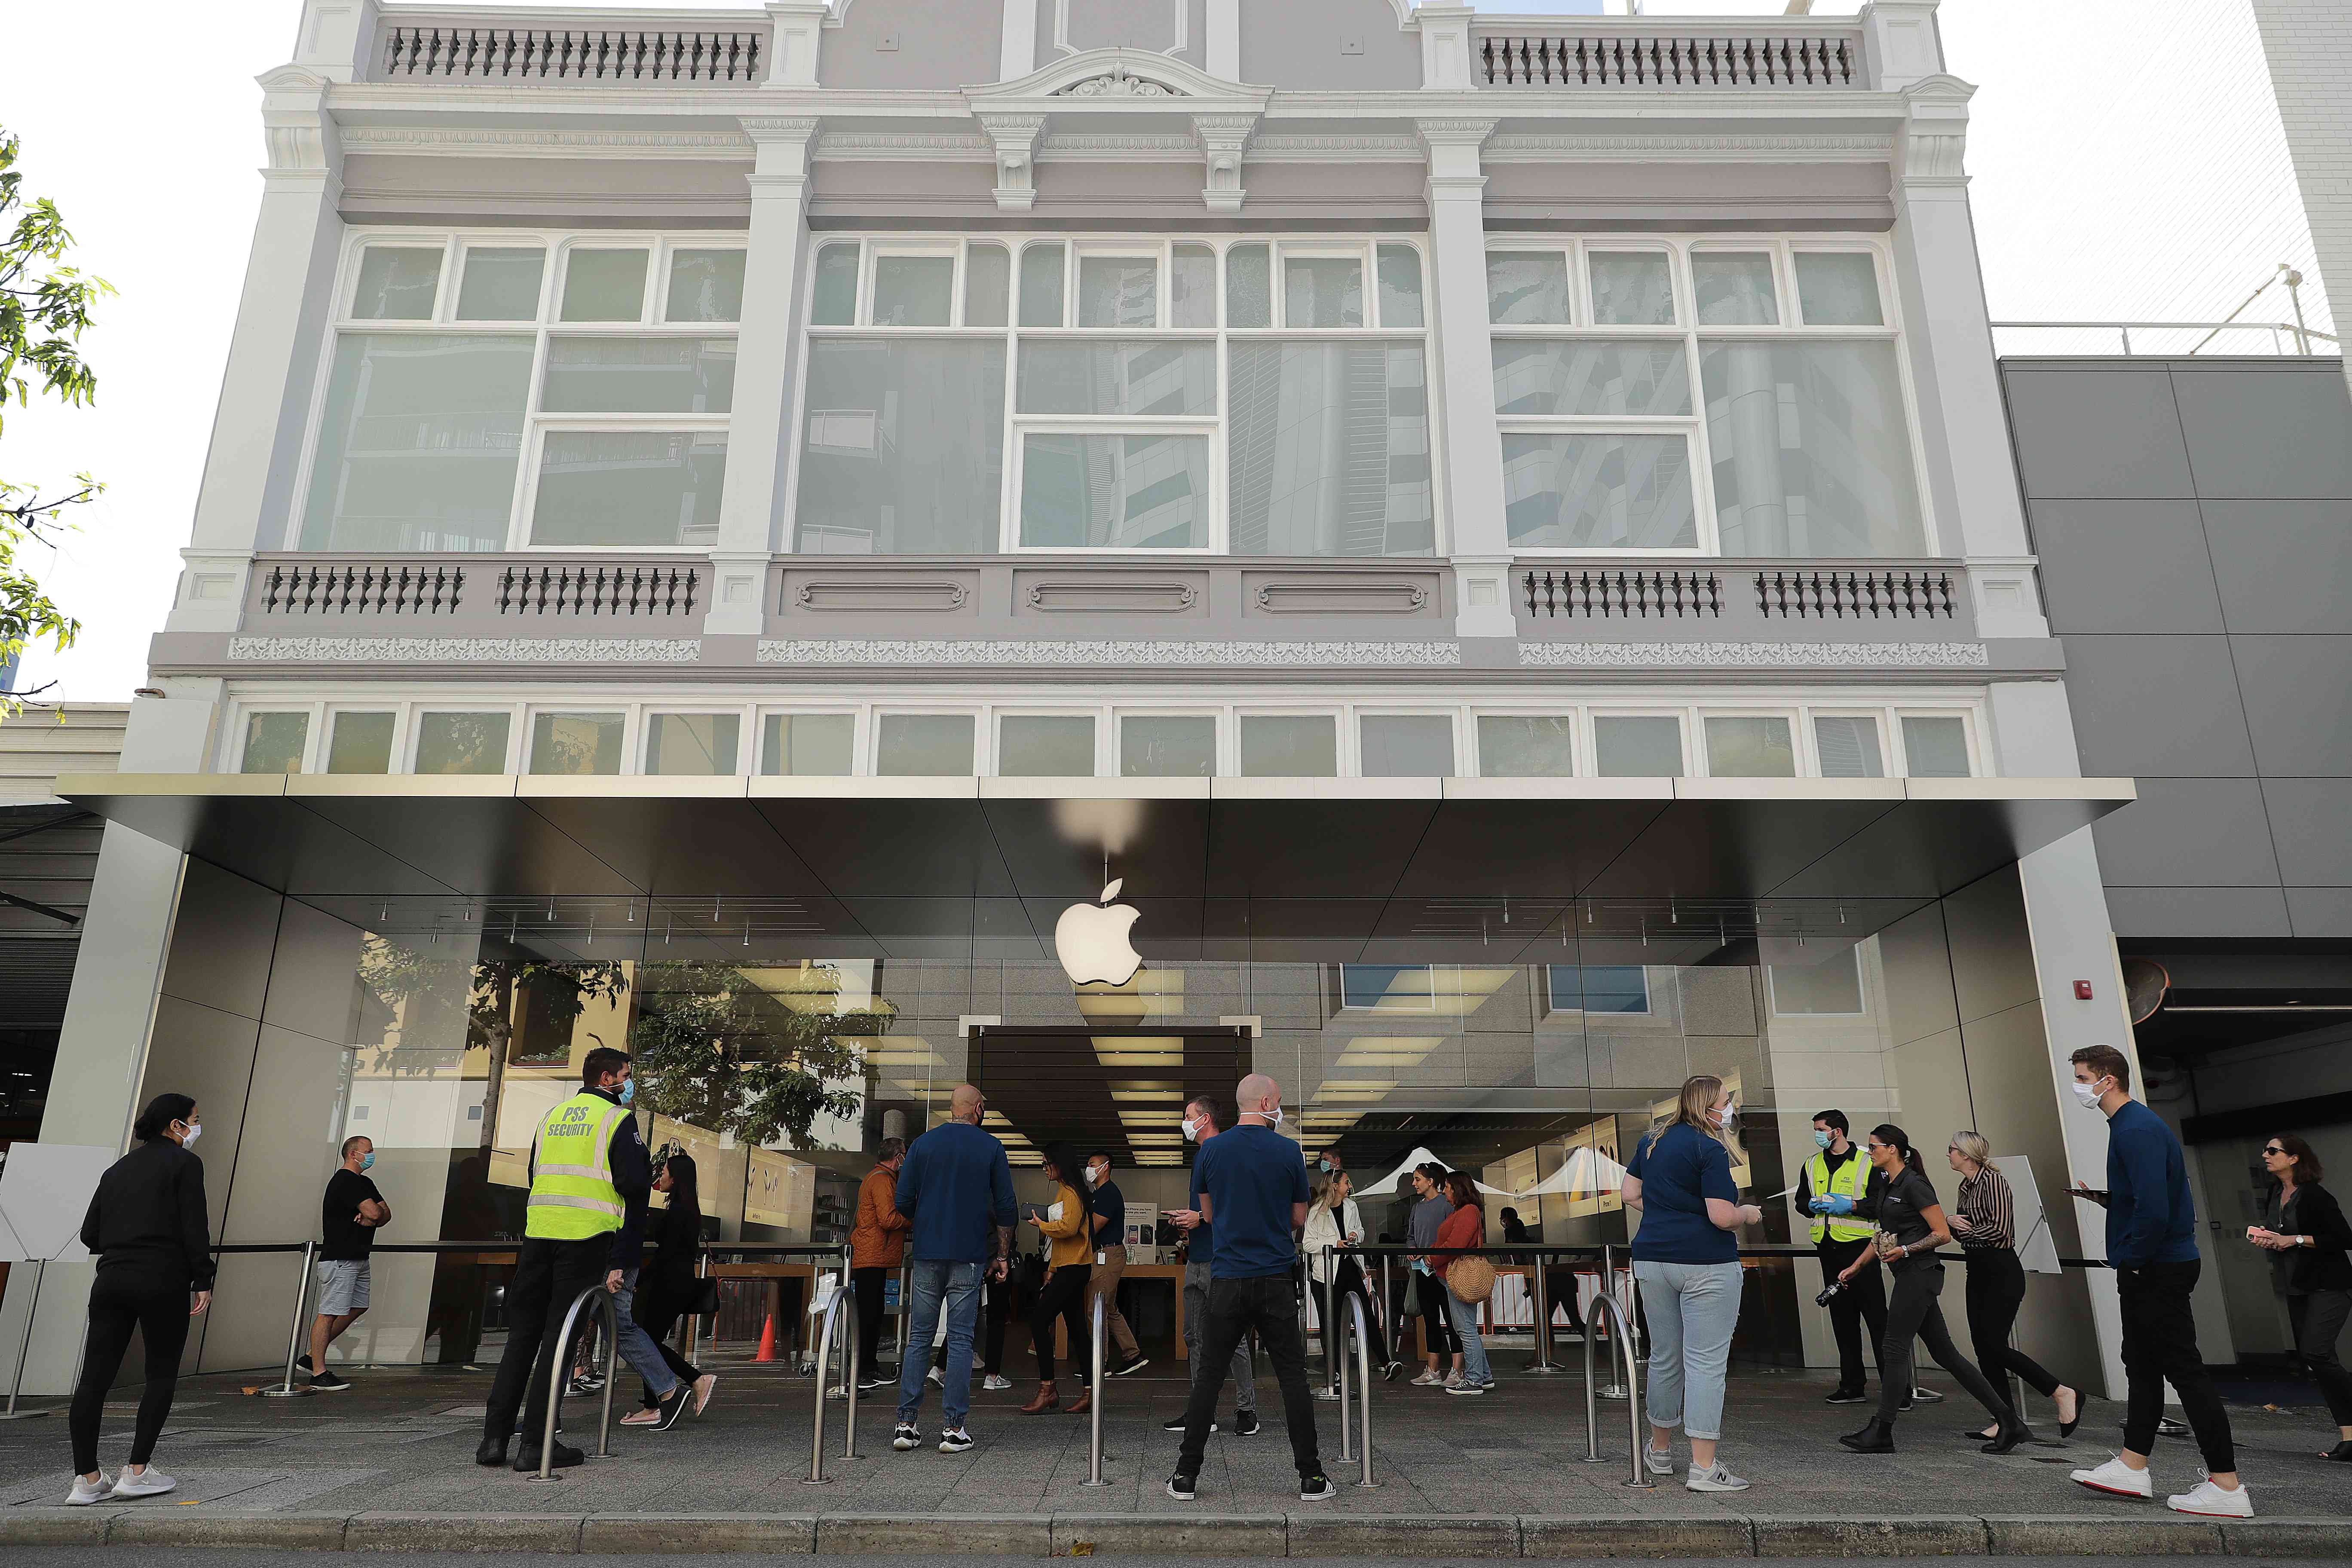 Співробітники Apple задають питання здоров’я людям, які заходять у магазин Apple у КБР Перту